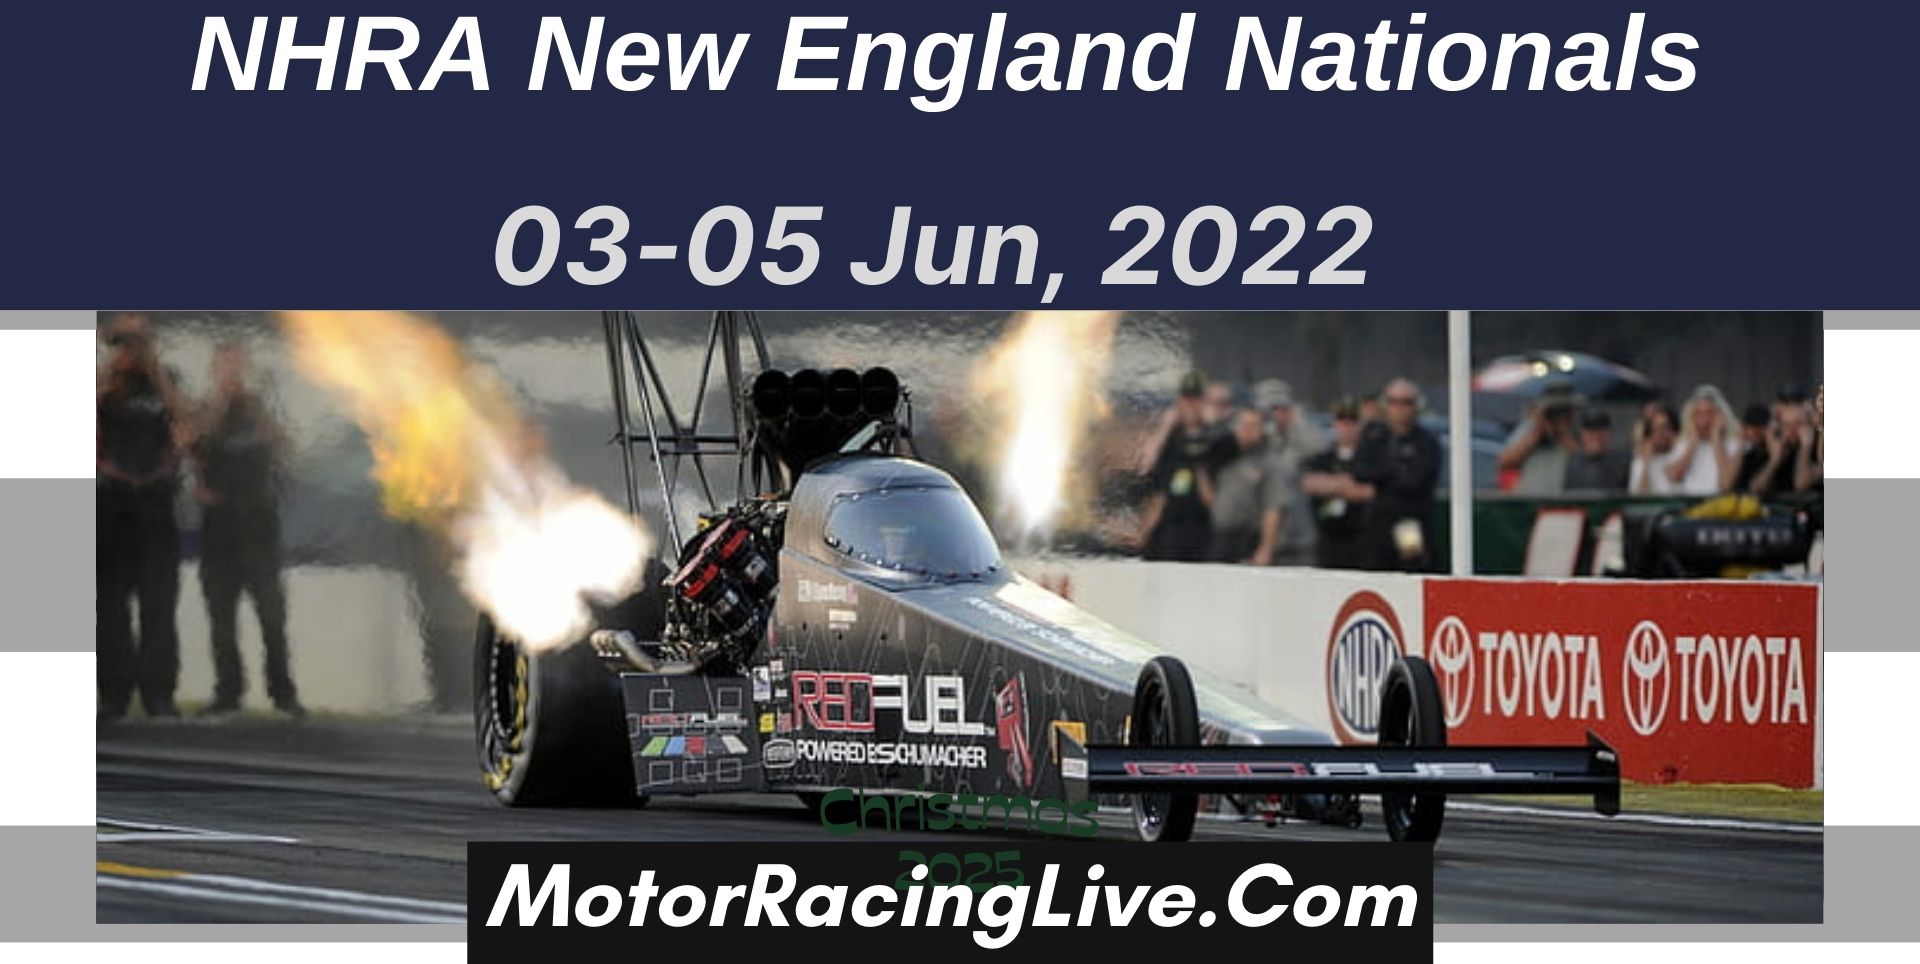 NHRA New England Nationals Live Stream